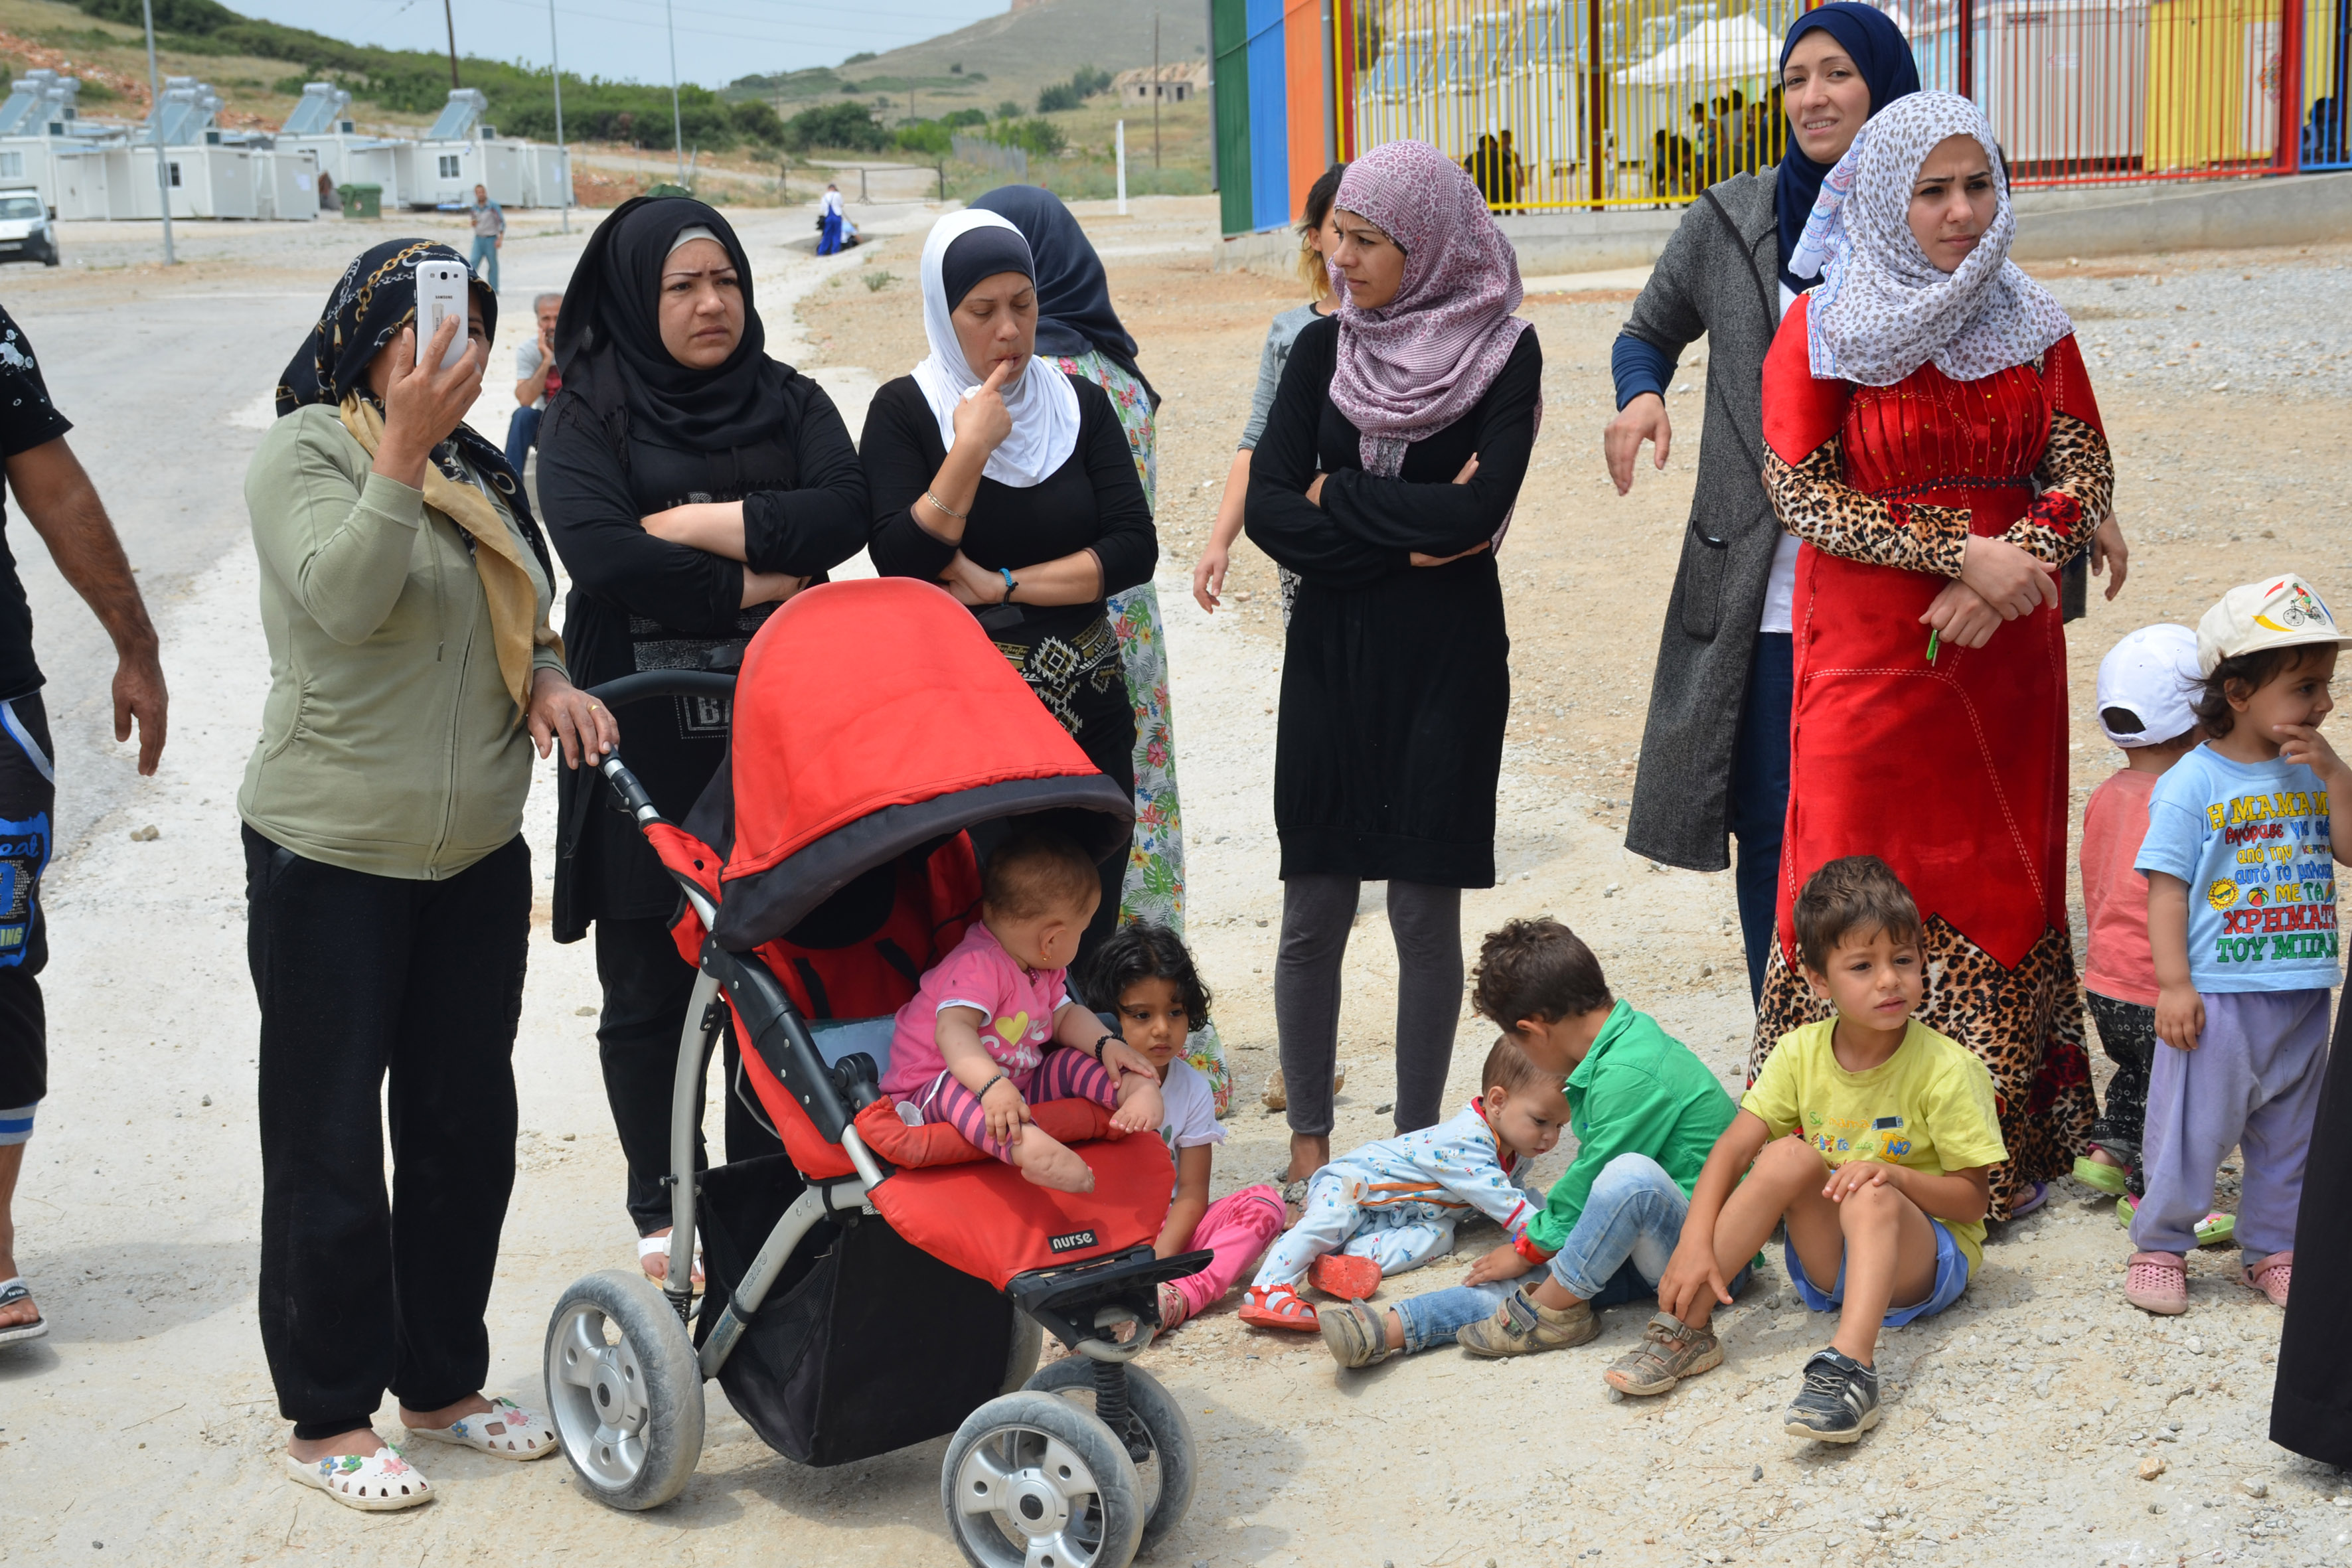 Σε φιάσκο οδηγείται το πρόγραμμα μετεγκατάστασης των προσφύγων